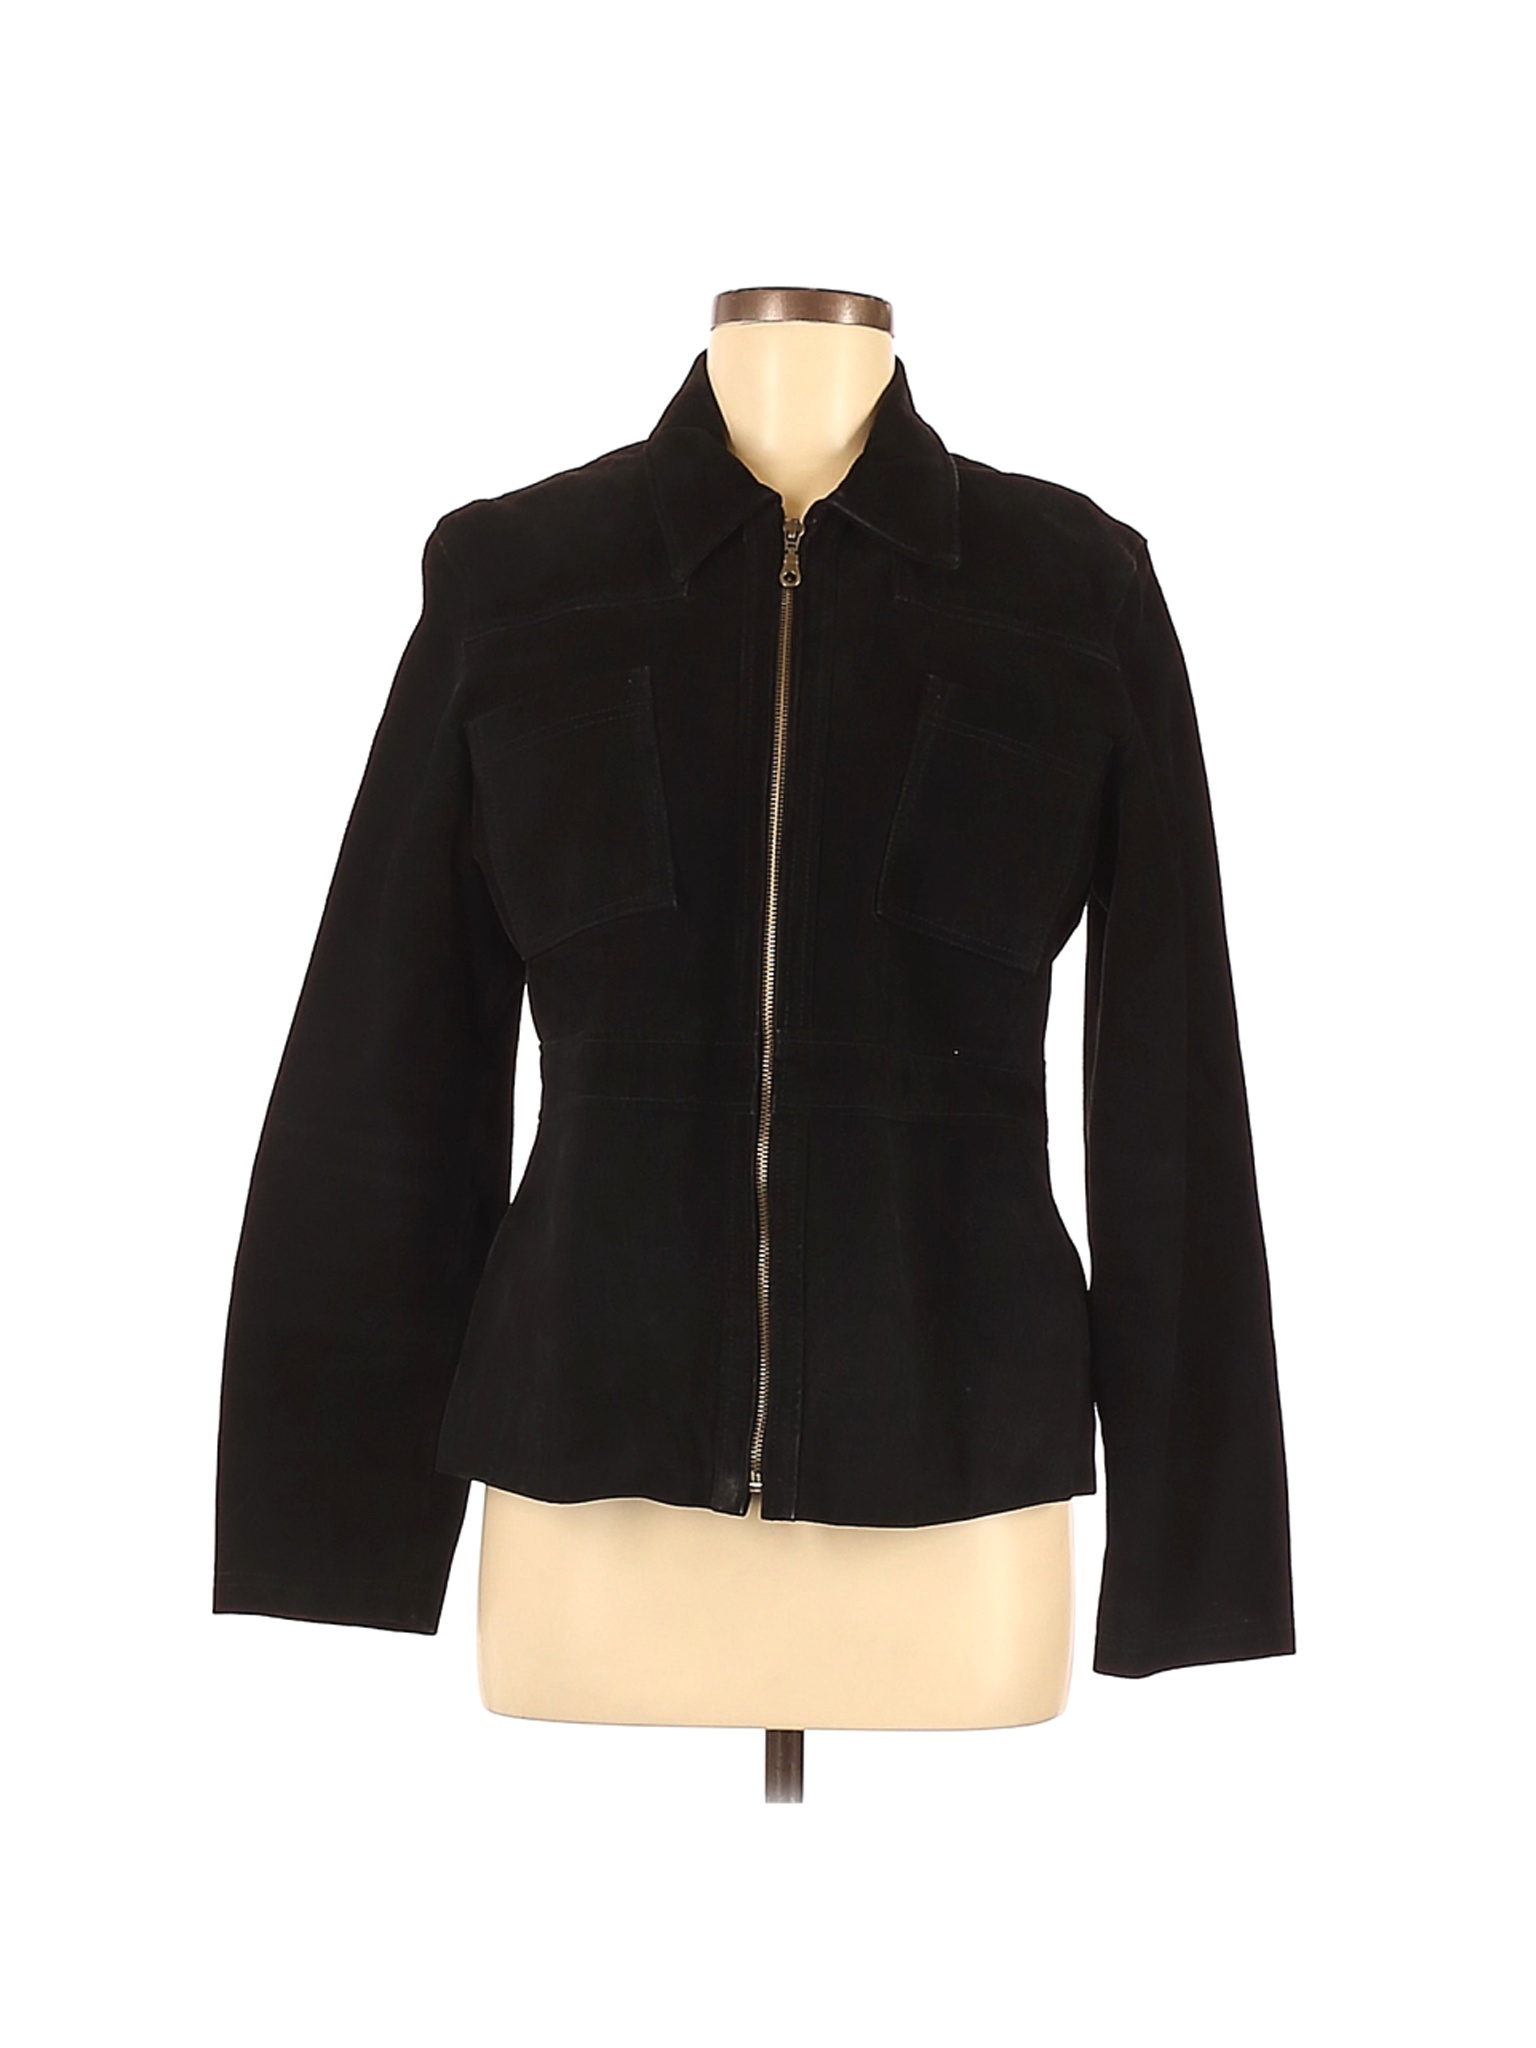 XOXO Women Black Leather Jacket M | eBay